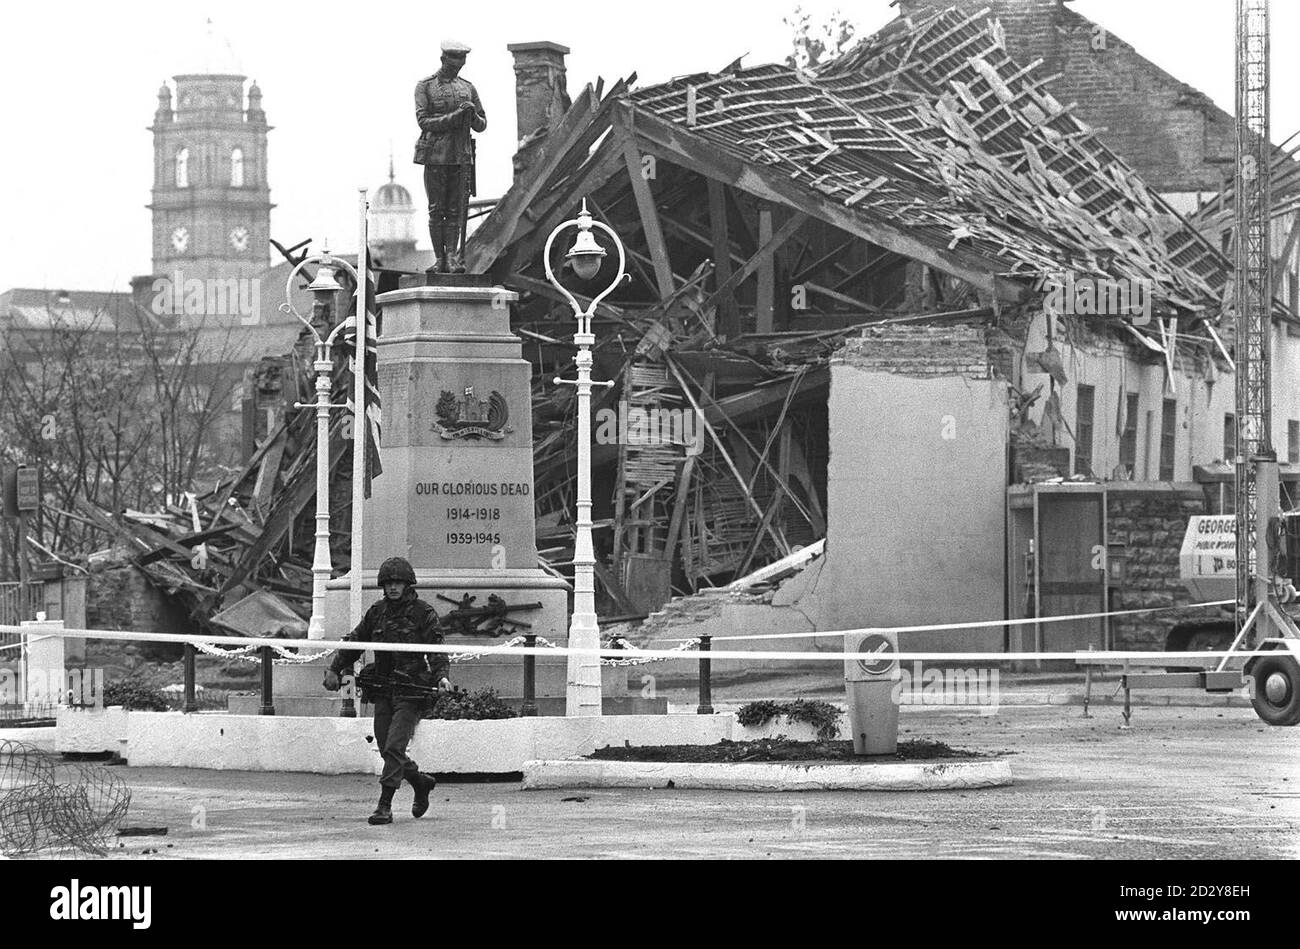 Akte vom 8.11.87 der Szene nach dem Bombenanschlag von Enniskillen in Co Fermanagh, der 11 Menschen das Leben kostete. Der 10. Jahrestag der IRA-Bombe wird morgen (Samstag) gefeiert. Siehe PA Story ULSTER Anniversary. Stockfoto